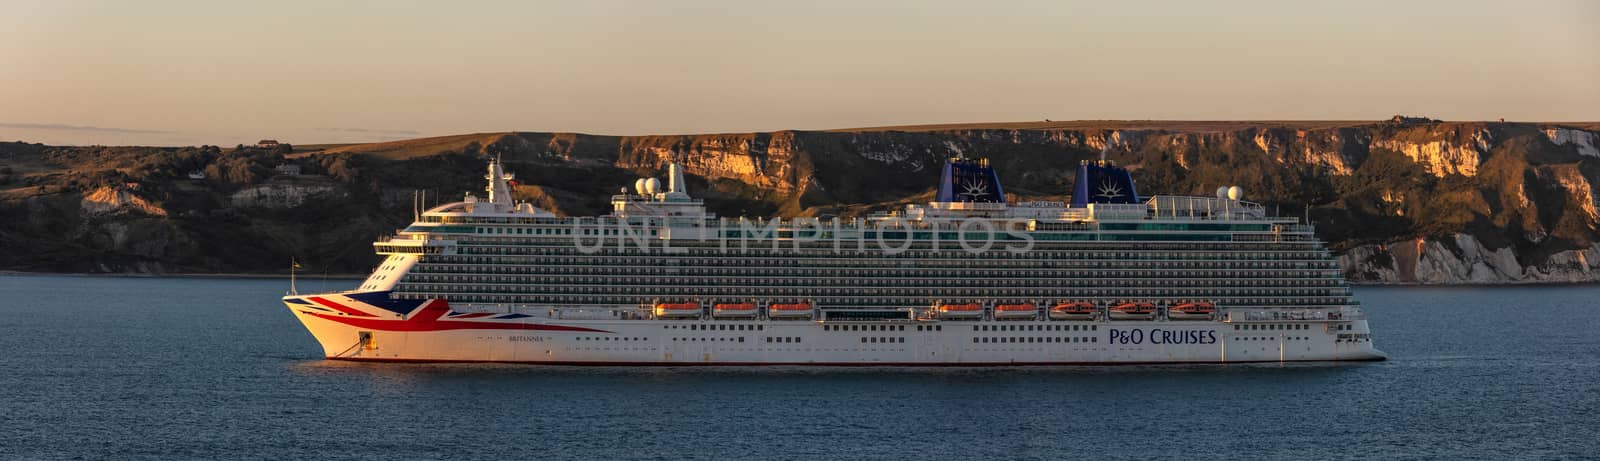 P&O cruise ship Britannia in Weymouth Bay by DamantisZ